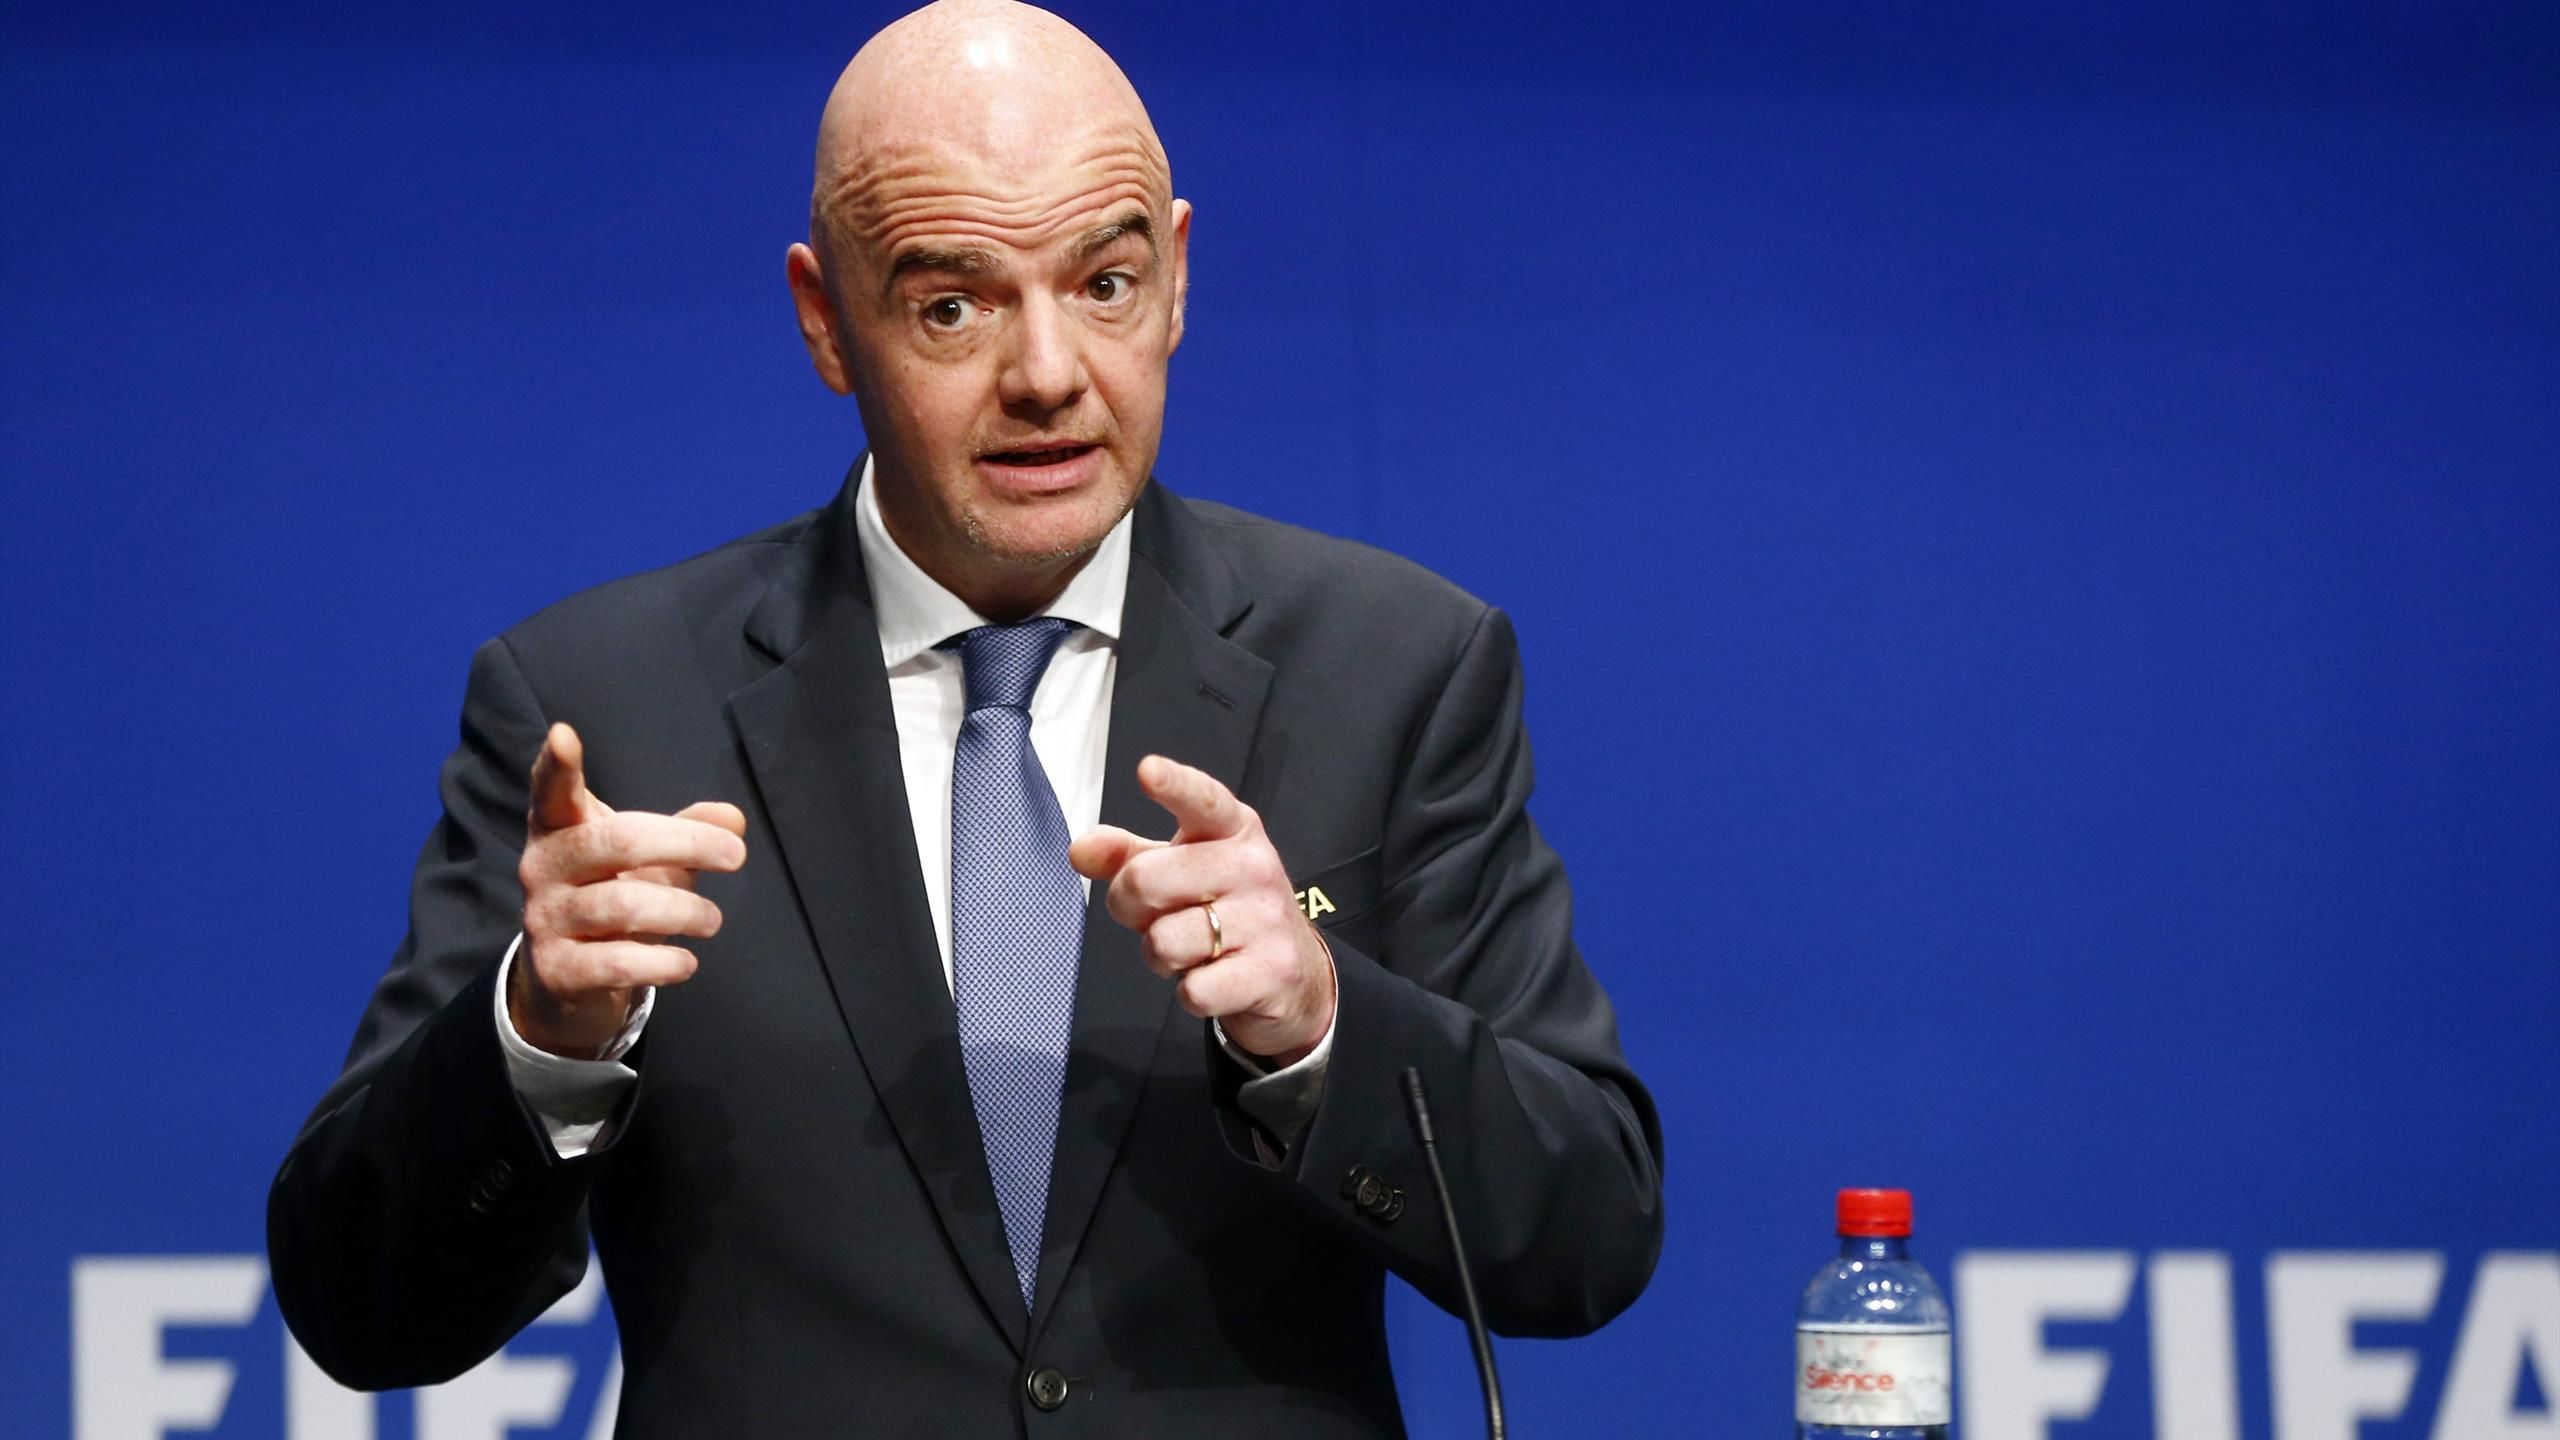 ФИФА заработала на ЧМ-2022 в Катаре на 1 млрд долларов больше, чем на мундиале в России